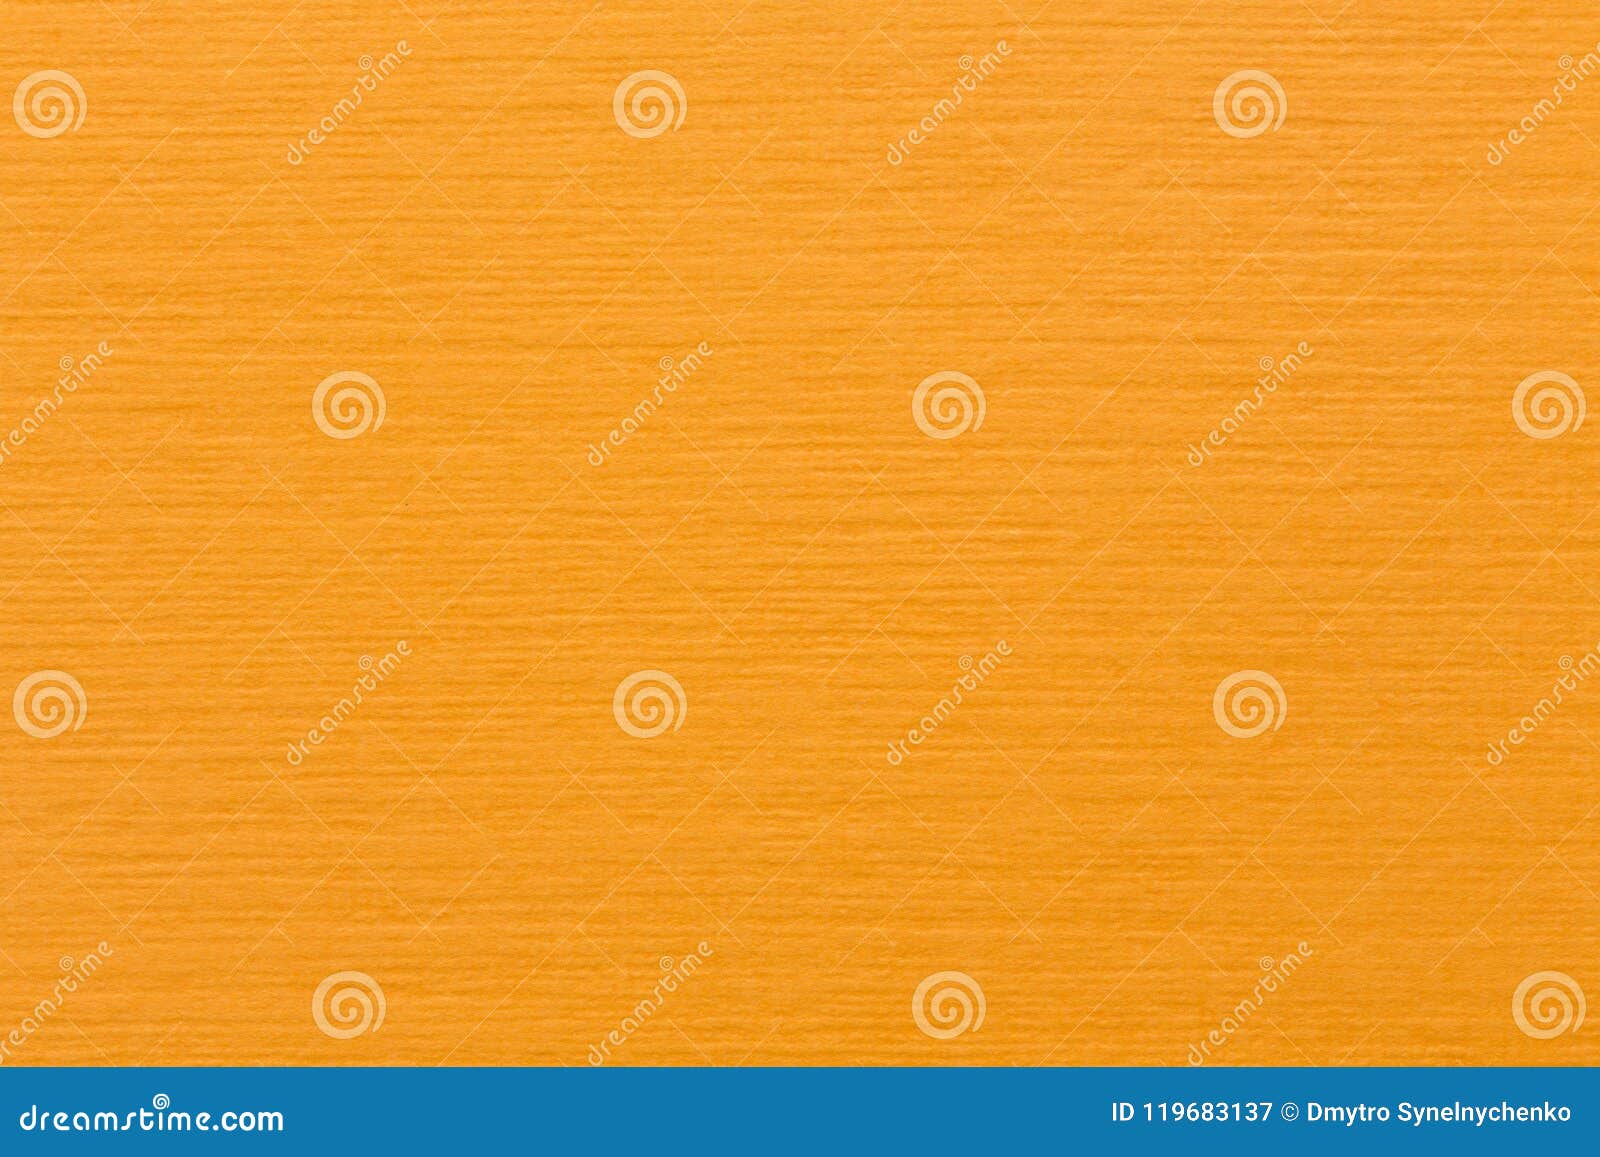 Orange felt background stock image. Image of fabric, metallic